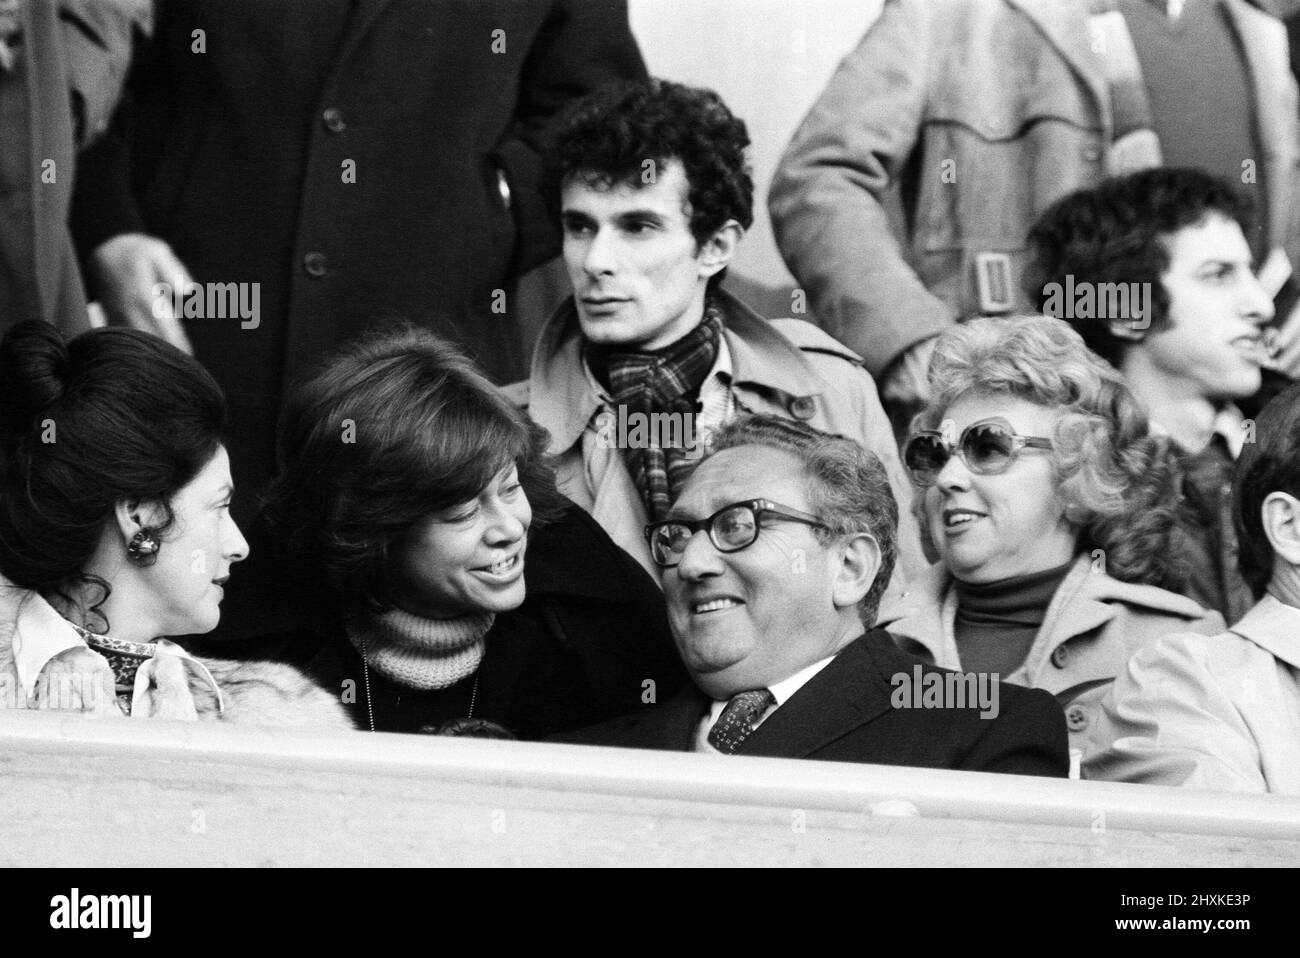 Henry Kissinger schaut sich ein Fußballspiel an. Chelsea gegen Wolverhampton Wanderers. League Division 2. Stamford Bridge, London. Endergebnis 3 - 3. 11.. Dezember 1976. Stockfoto